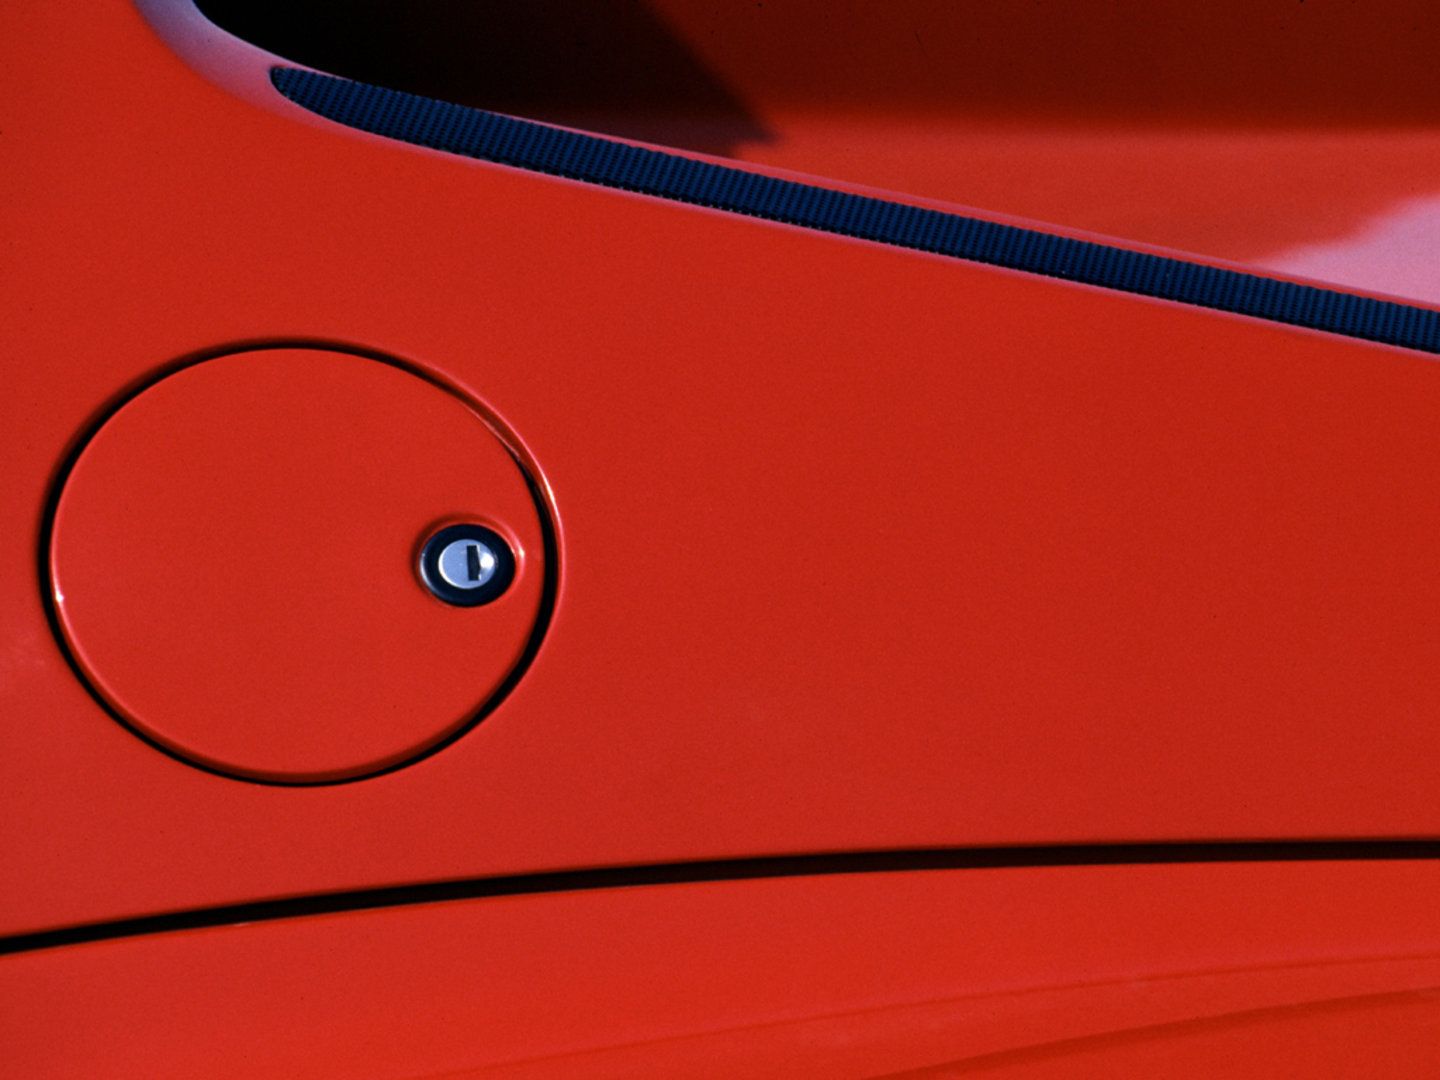 1984 - 1991 Ferrari Testarossa